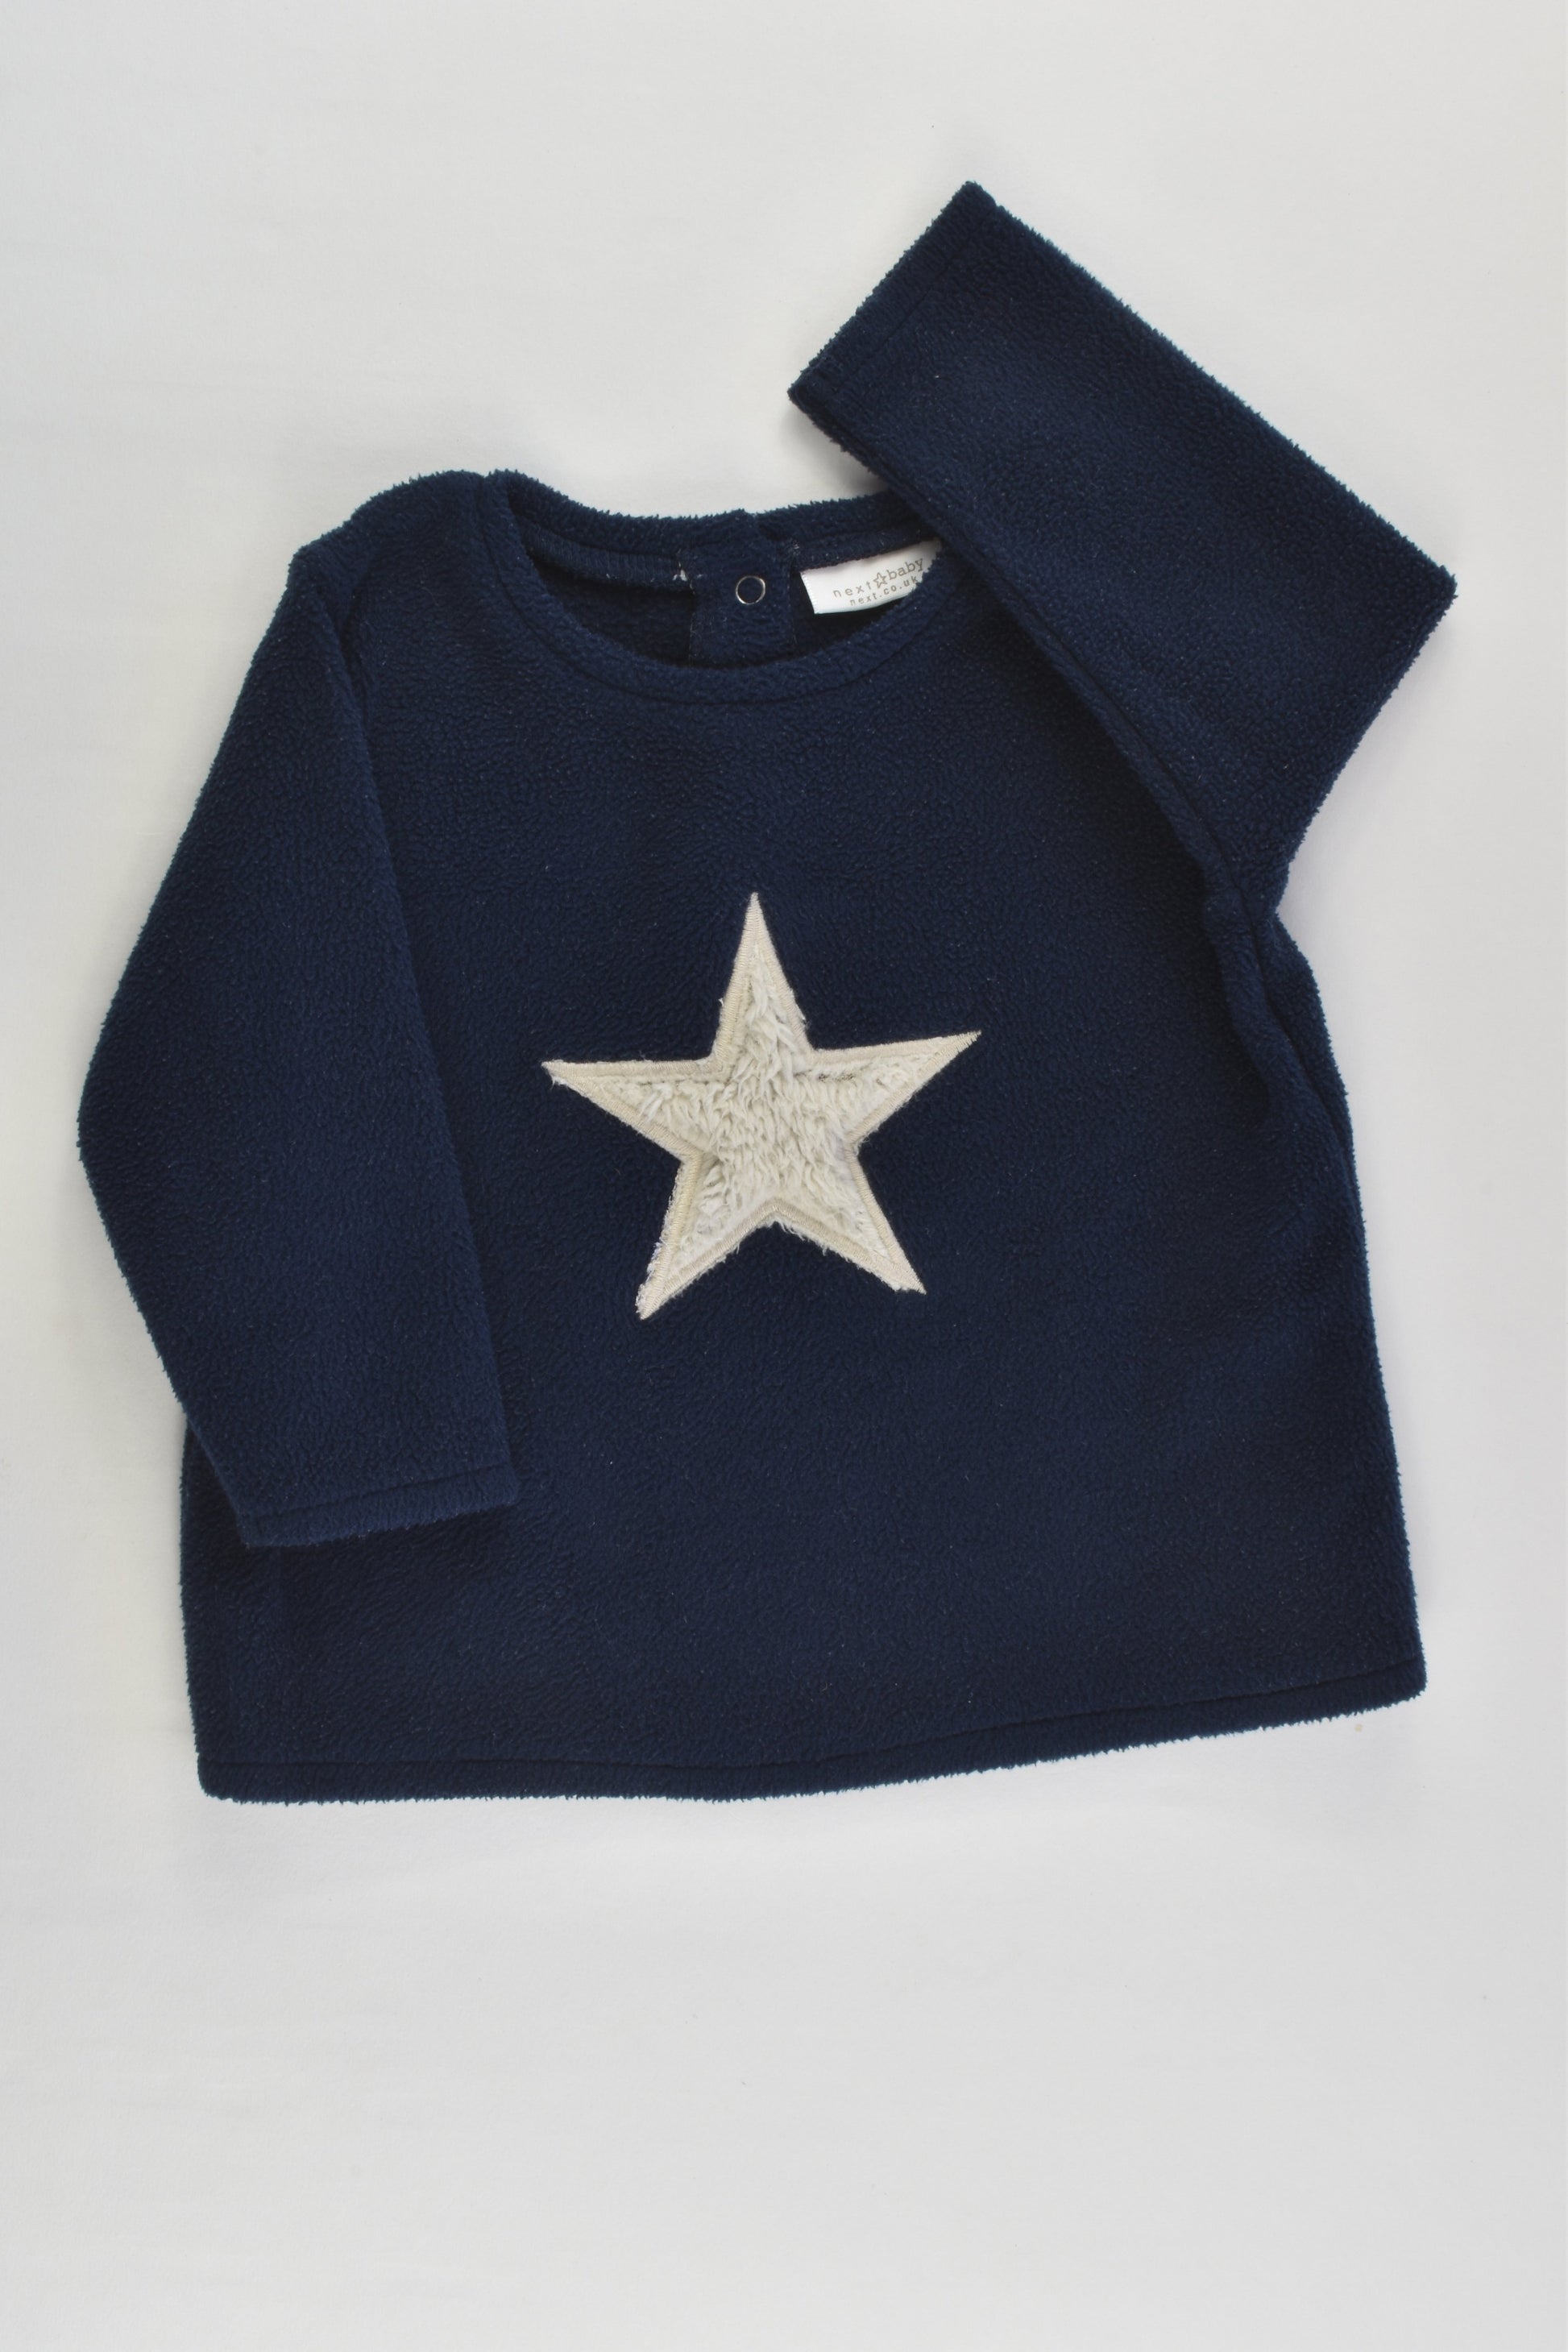 Next (UK) Size 00 (3-6 months) Star Fleece Jumper